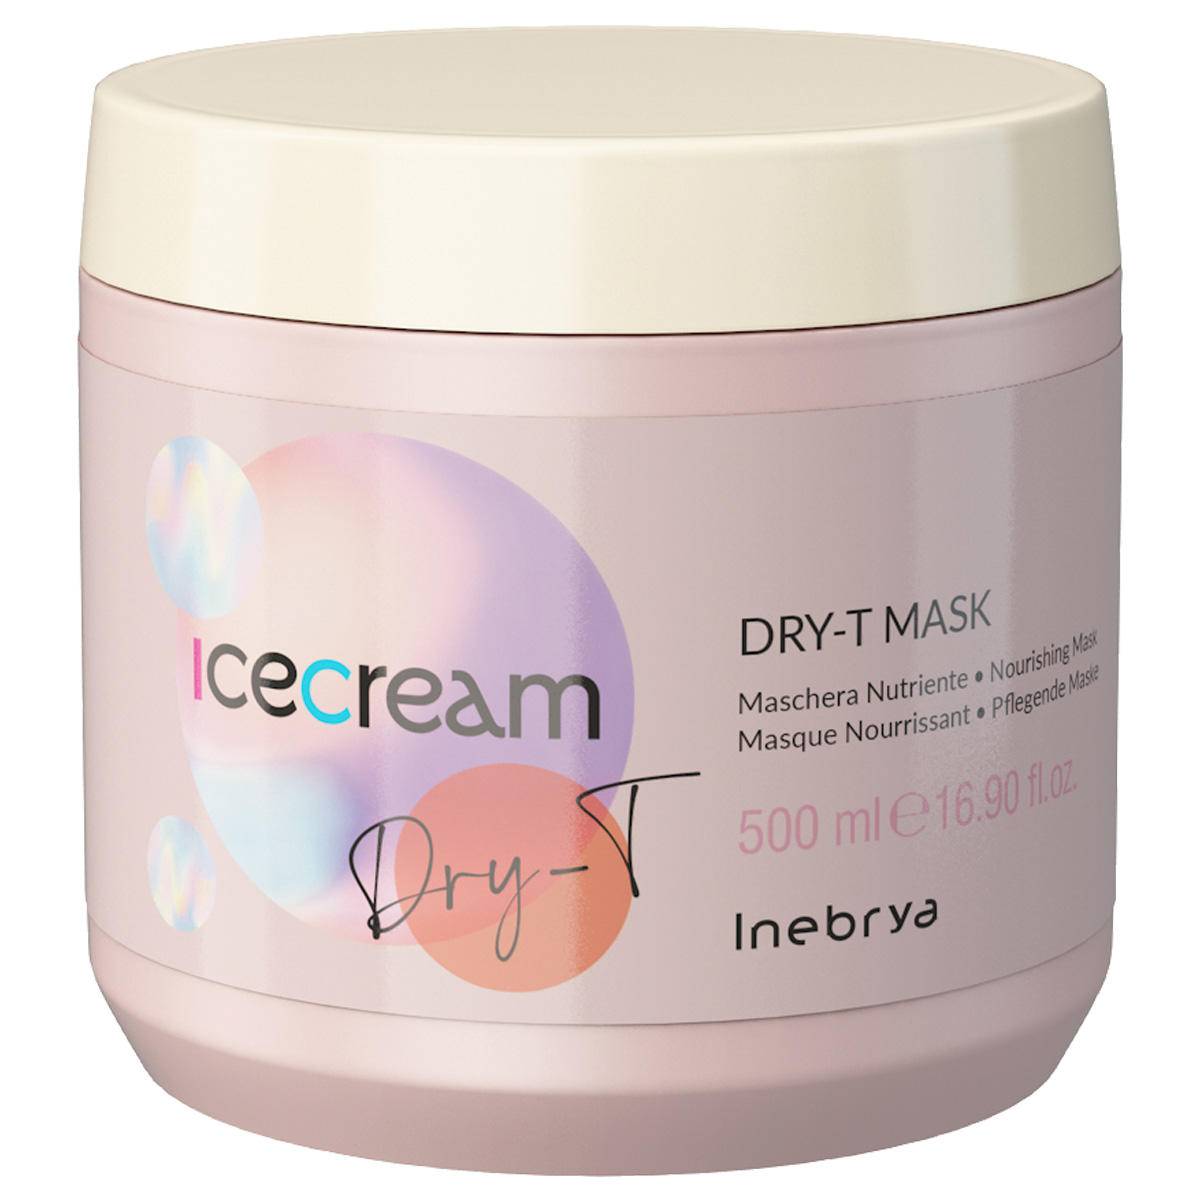 inebrya ice cream dry-t mask 500 ml